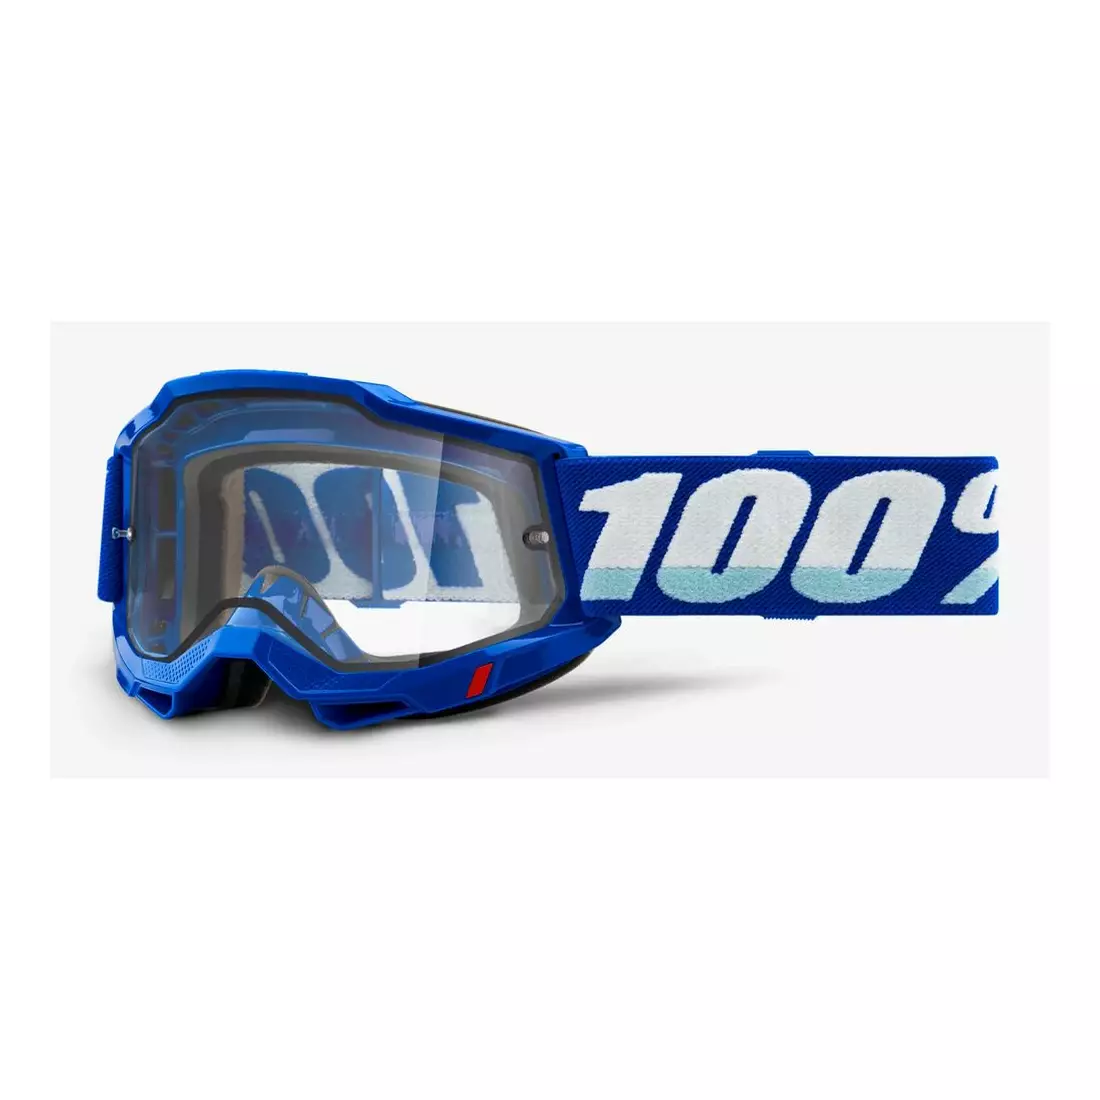 100% ochelari de protecție pentru biciclete  ACCURI 2 ENDURO MOTO BLUE (Geamuri duble transparente) 1STO-50221-501-02